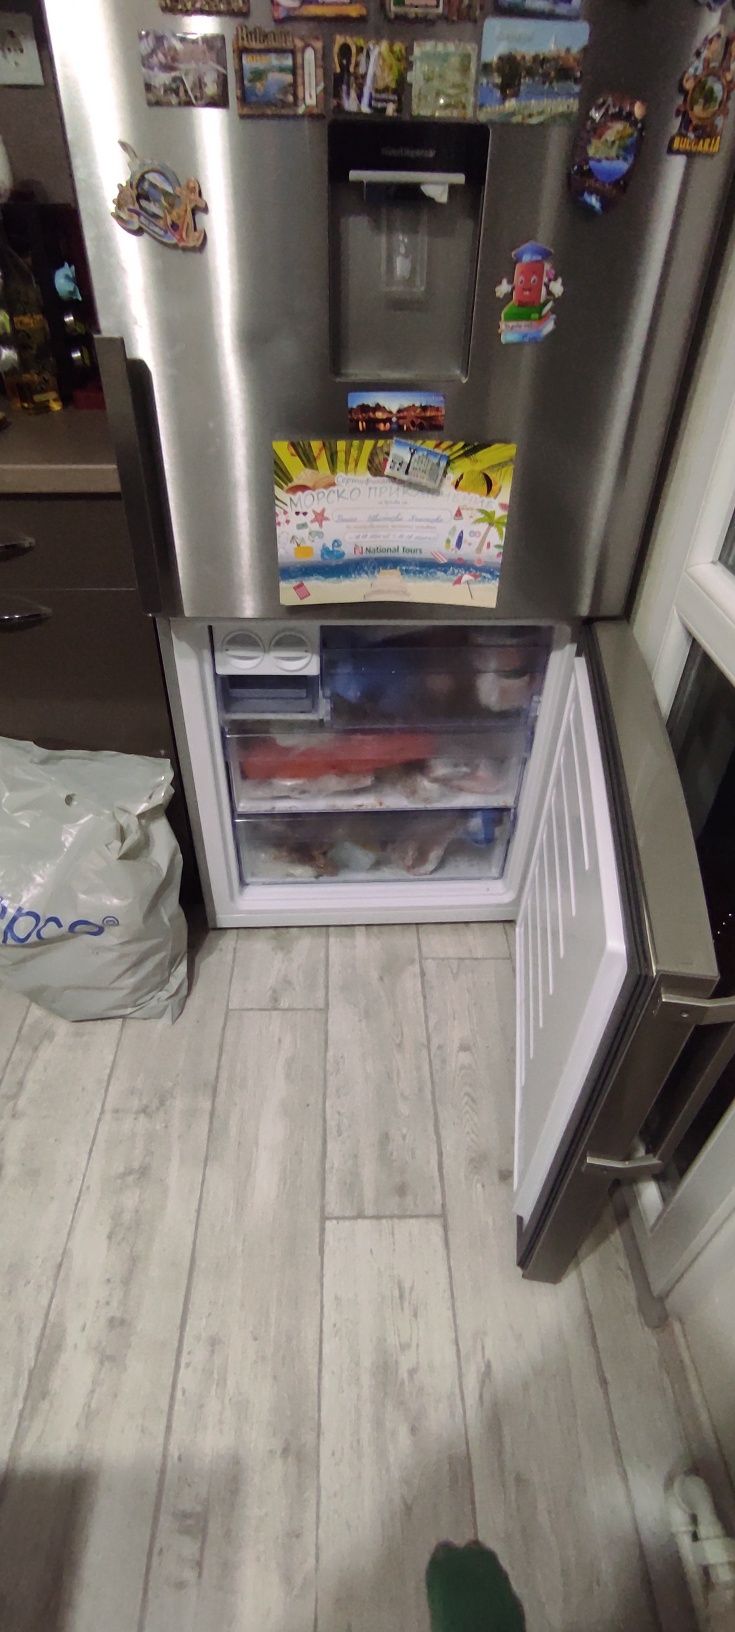 BEKO А+++ Хладилник с фризер
Хладилника е не различим от нов!

Дълбочи